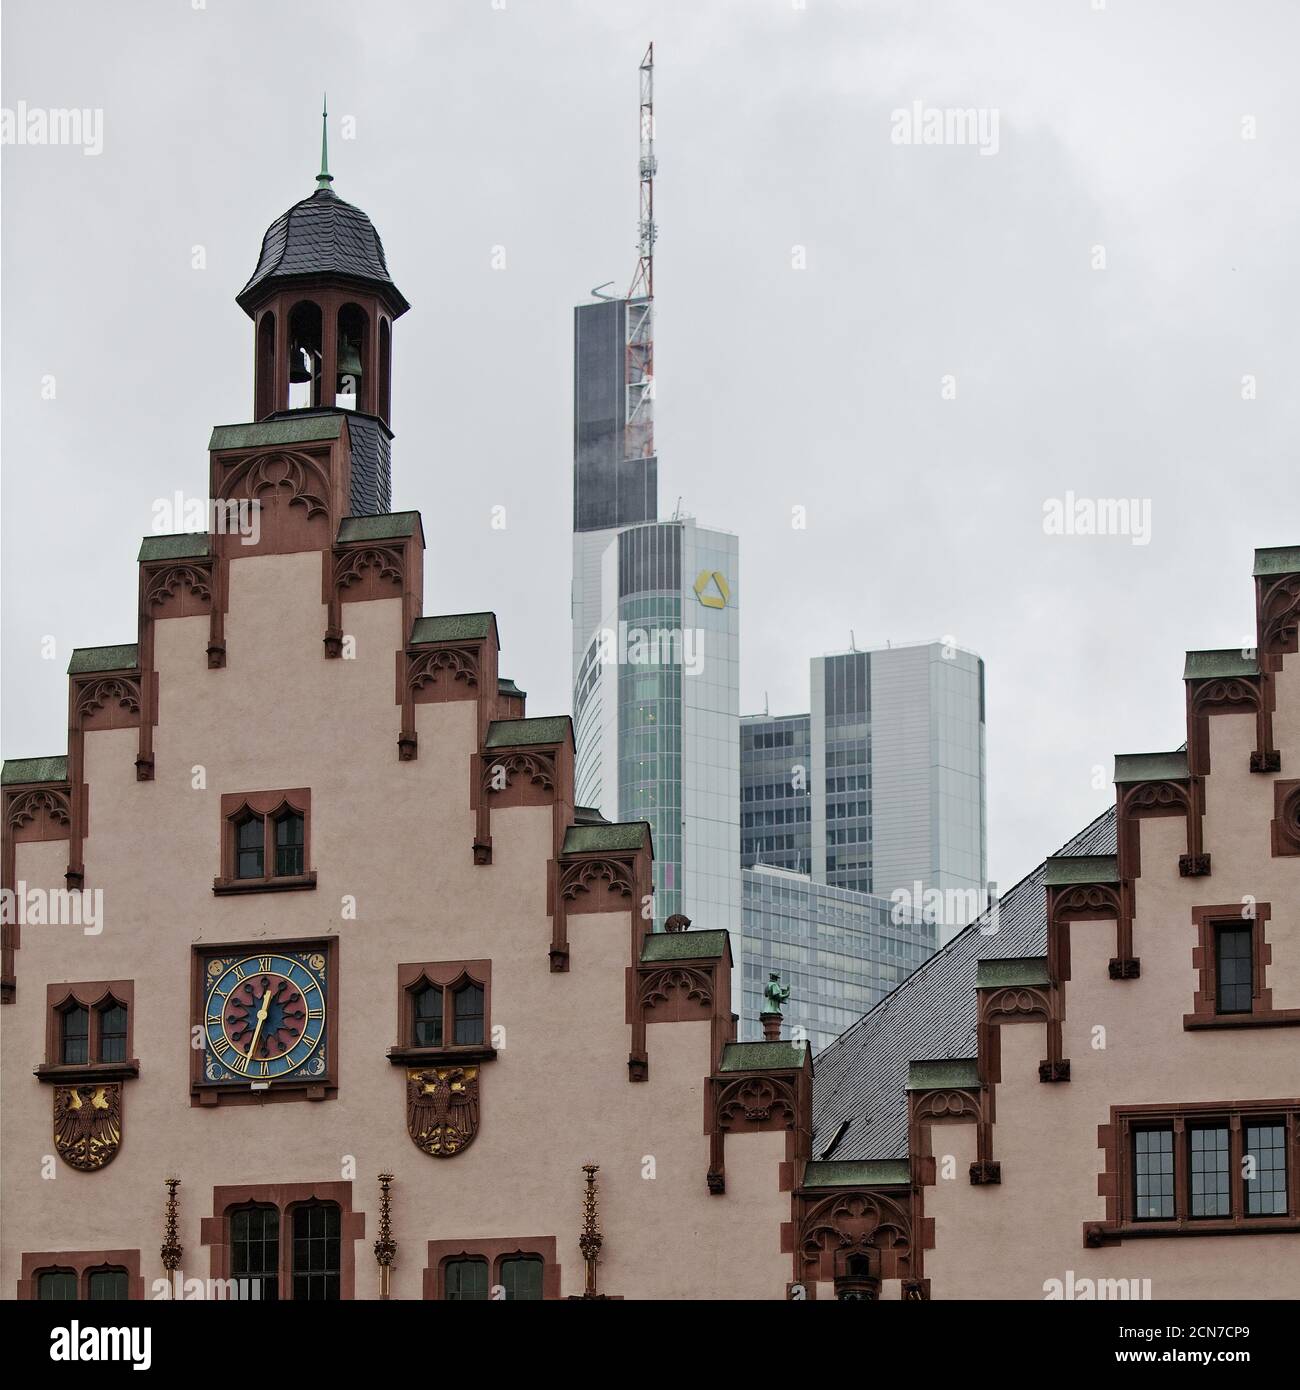 Hôtel de ville de Roemer avec Commerzbank, contraste architectural, Francfort-sur-le-main, Hesse, Allemagne, Europe Banque D'Images